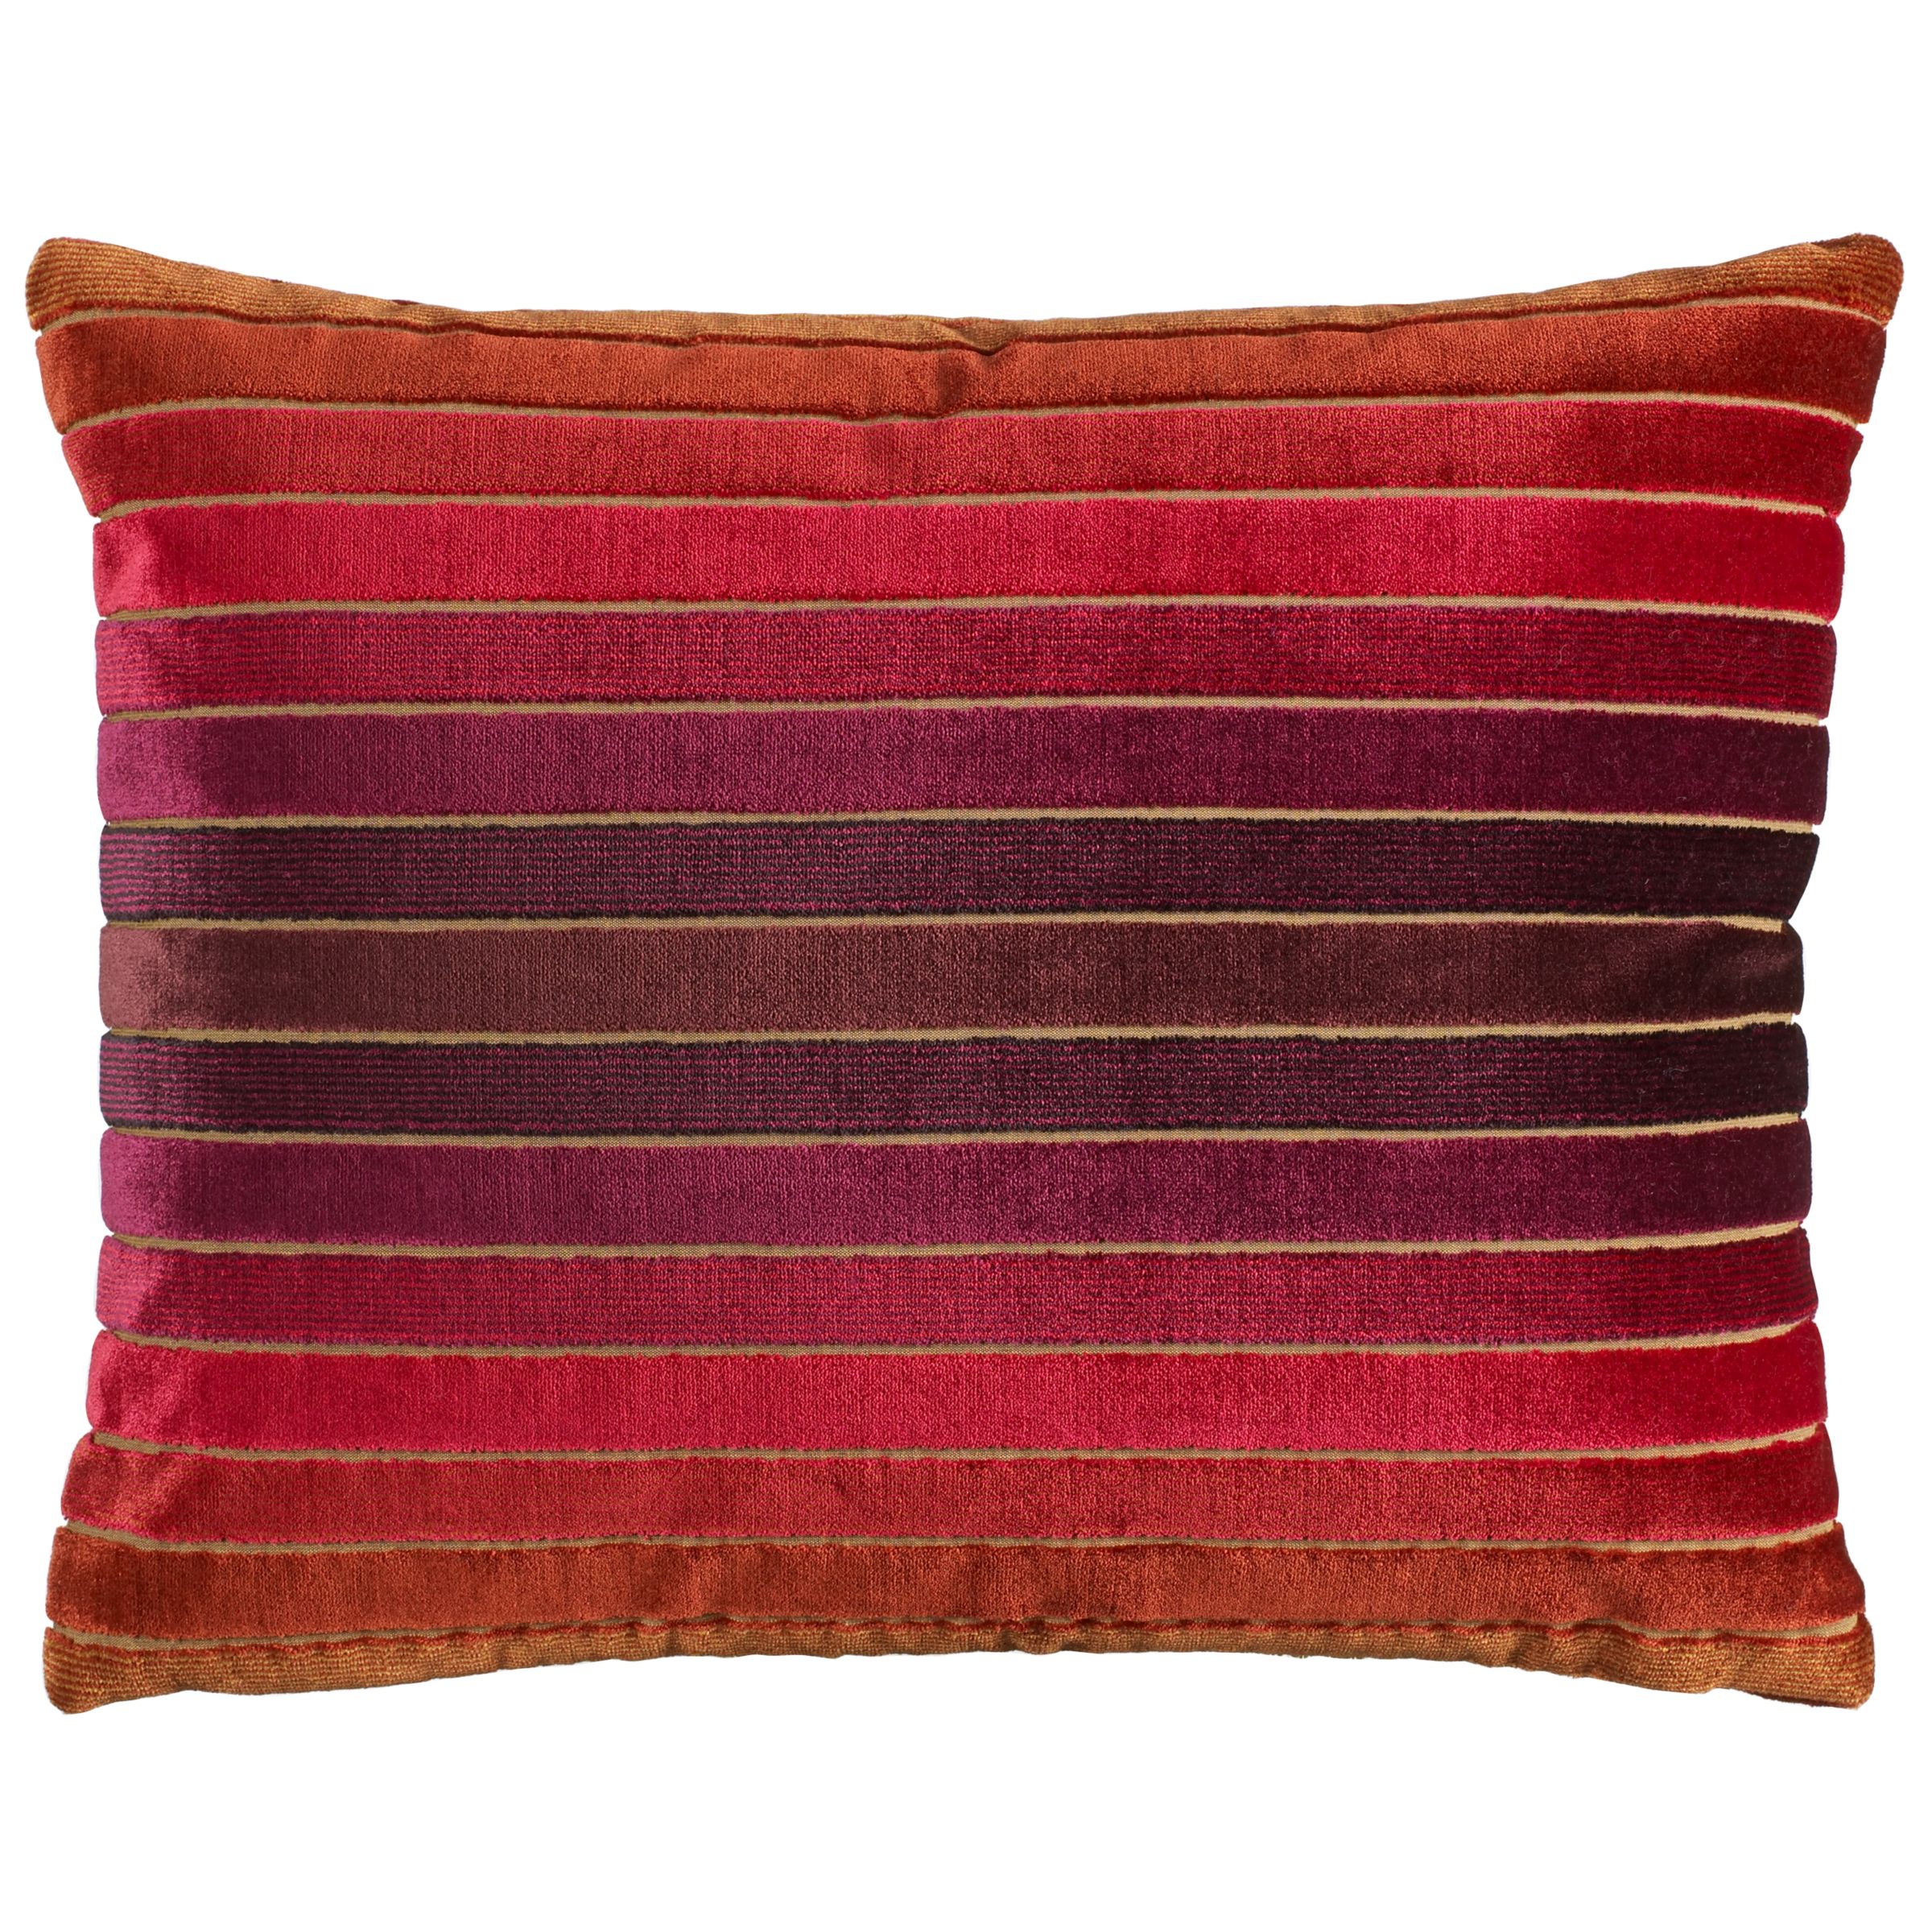 Sanderson Velluti Stripe Cushion, Multi / Red